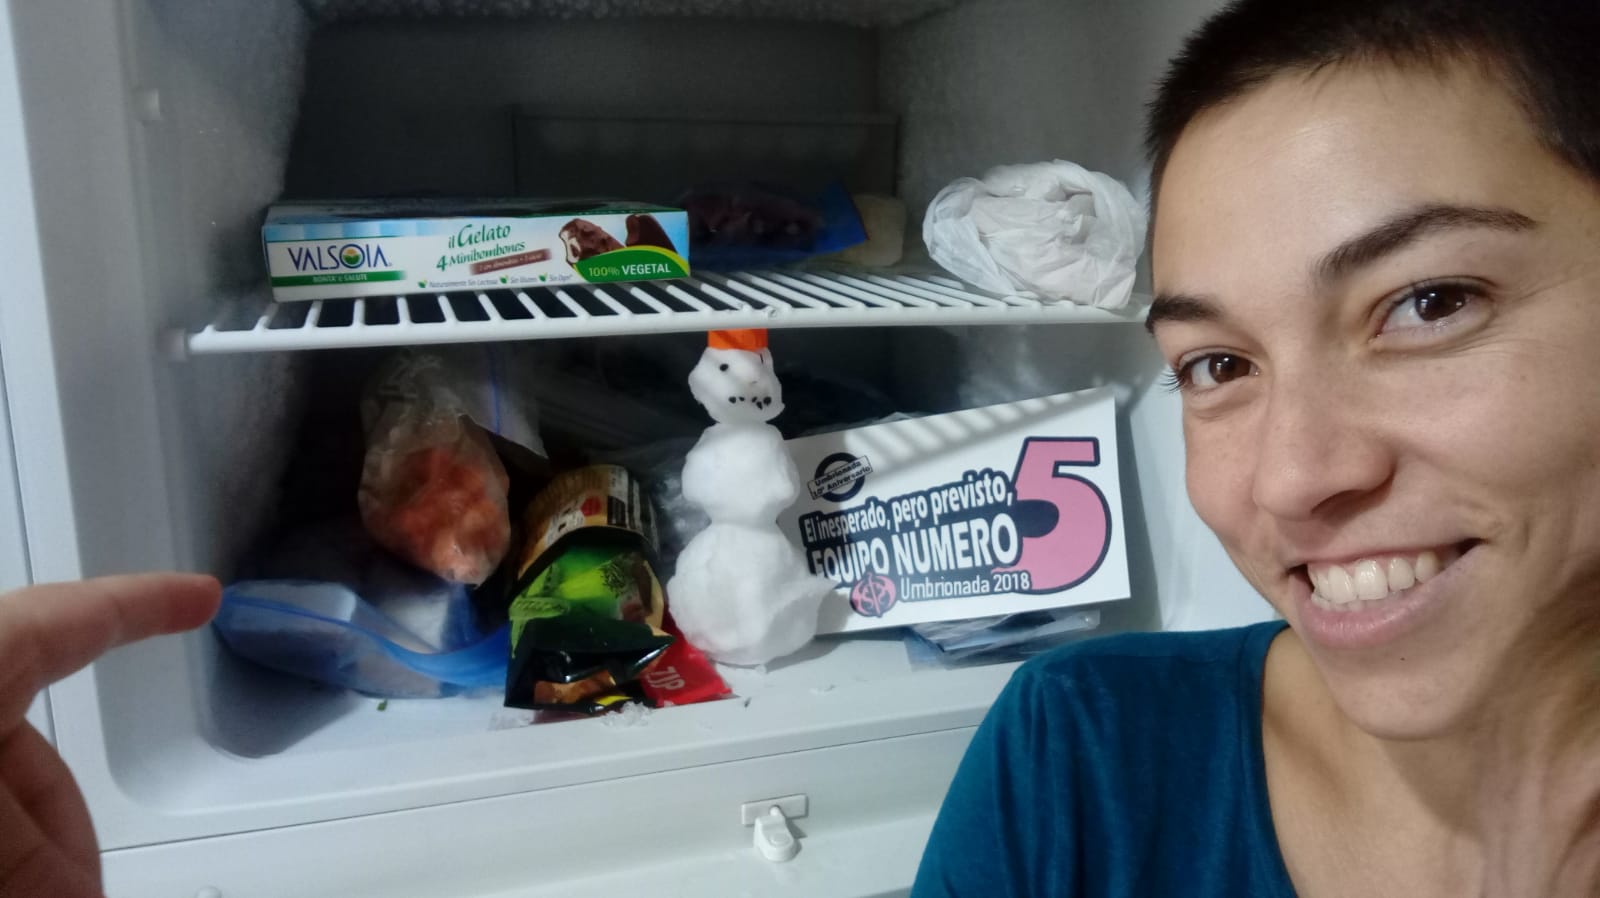 26. Con un muñeco hecho de nieve, que esté dentro de un refrigerador de casa. +1 si está dentro de una heladera comercial, de las que se usan para los